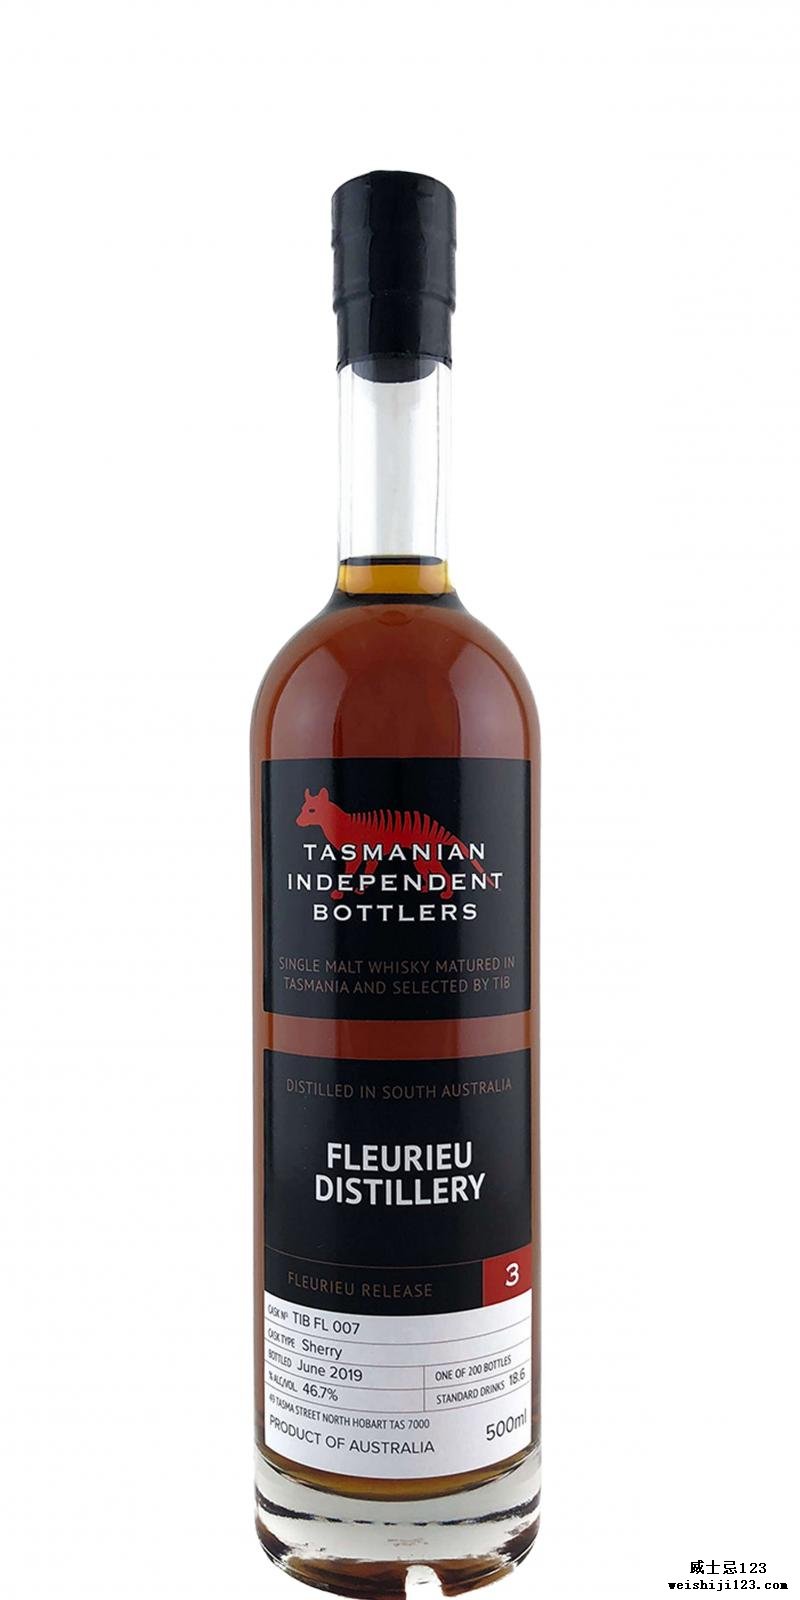 Fleurieu Distillery Fleurieu Release 3 TmIB